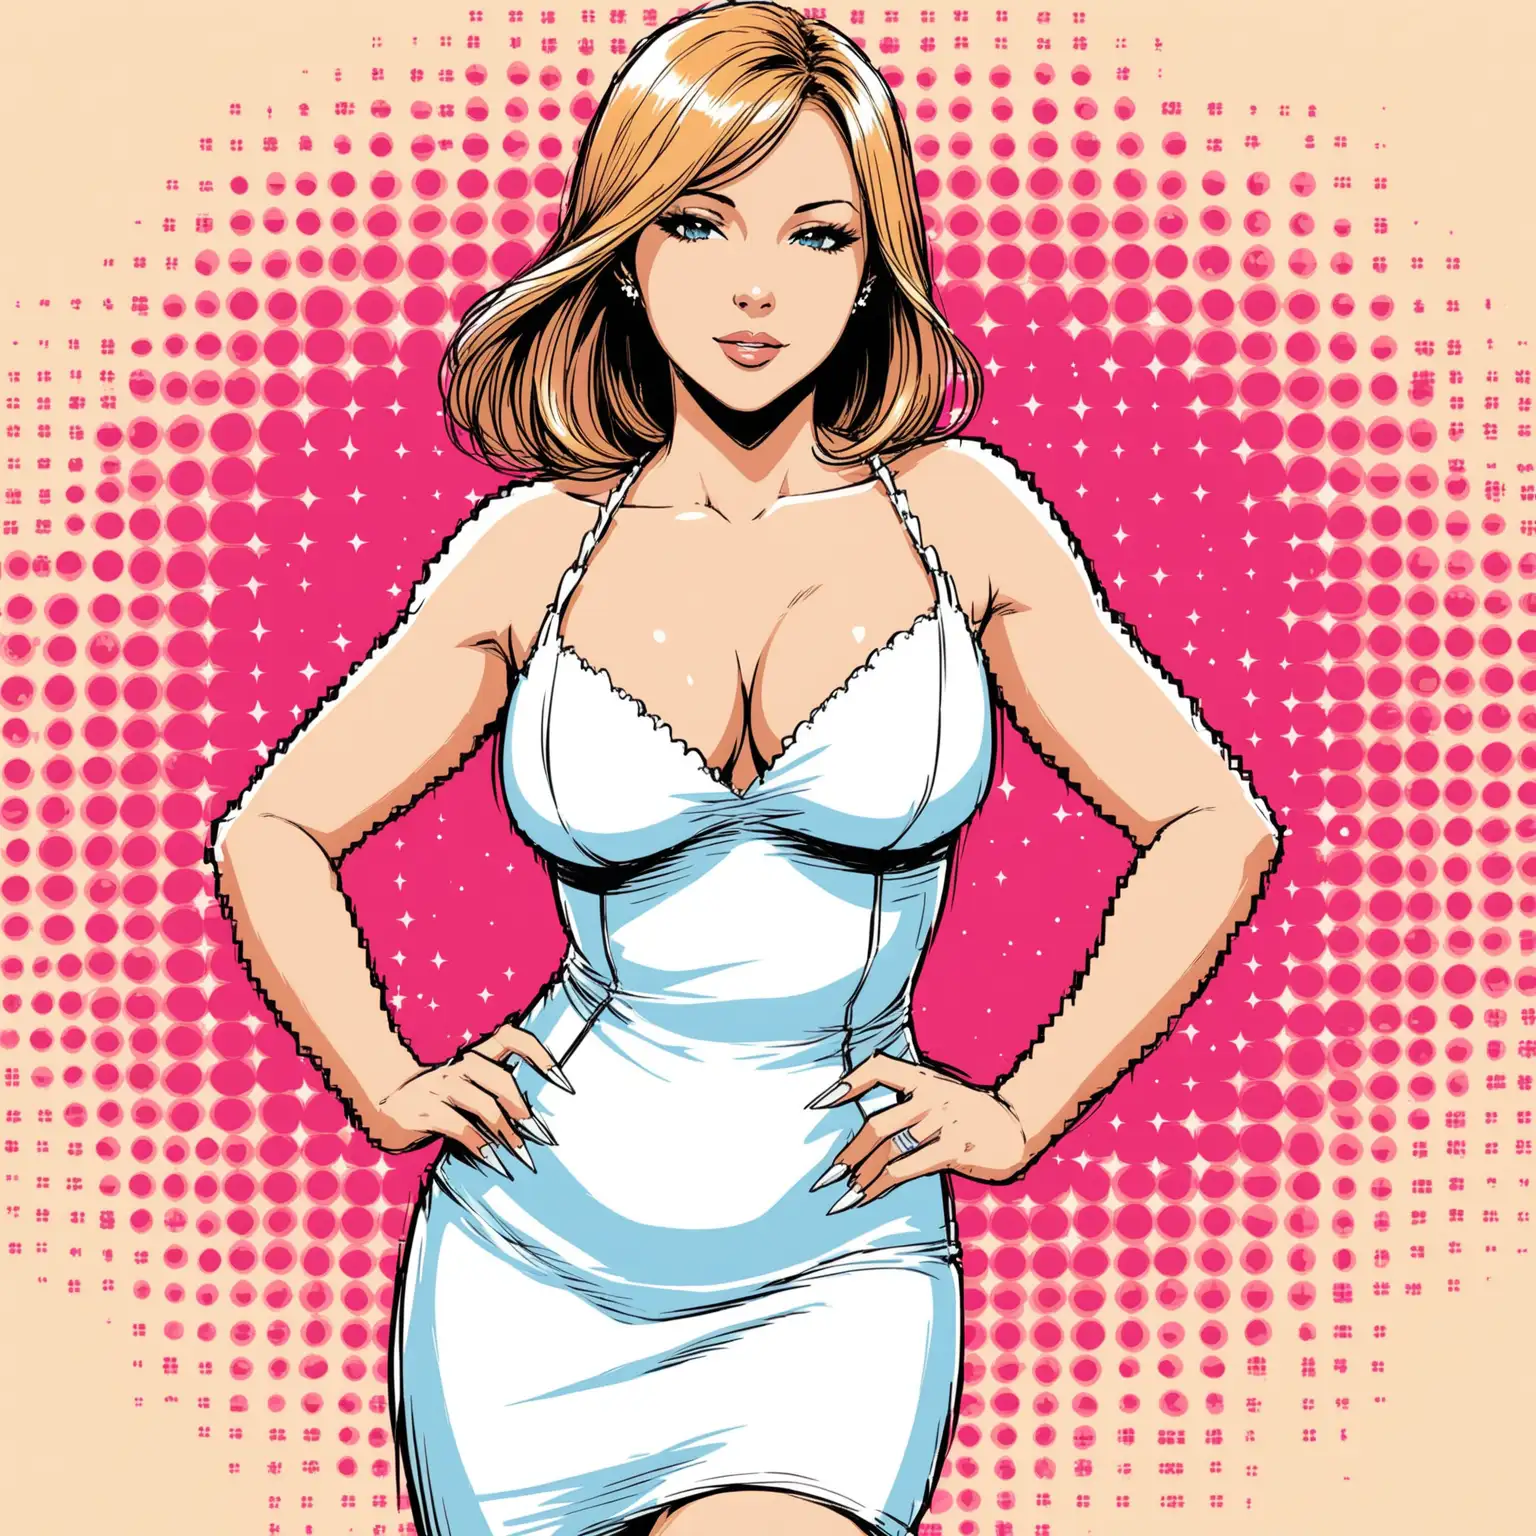 dans un style bande dessinée :
une femme élégante au trait de la chanteuse française jennifer qui porte un robe courte blanche avec un décolleté en v qui montre ses formes.
